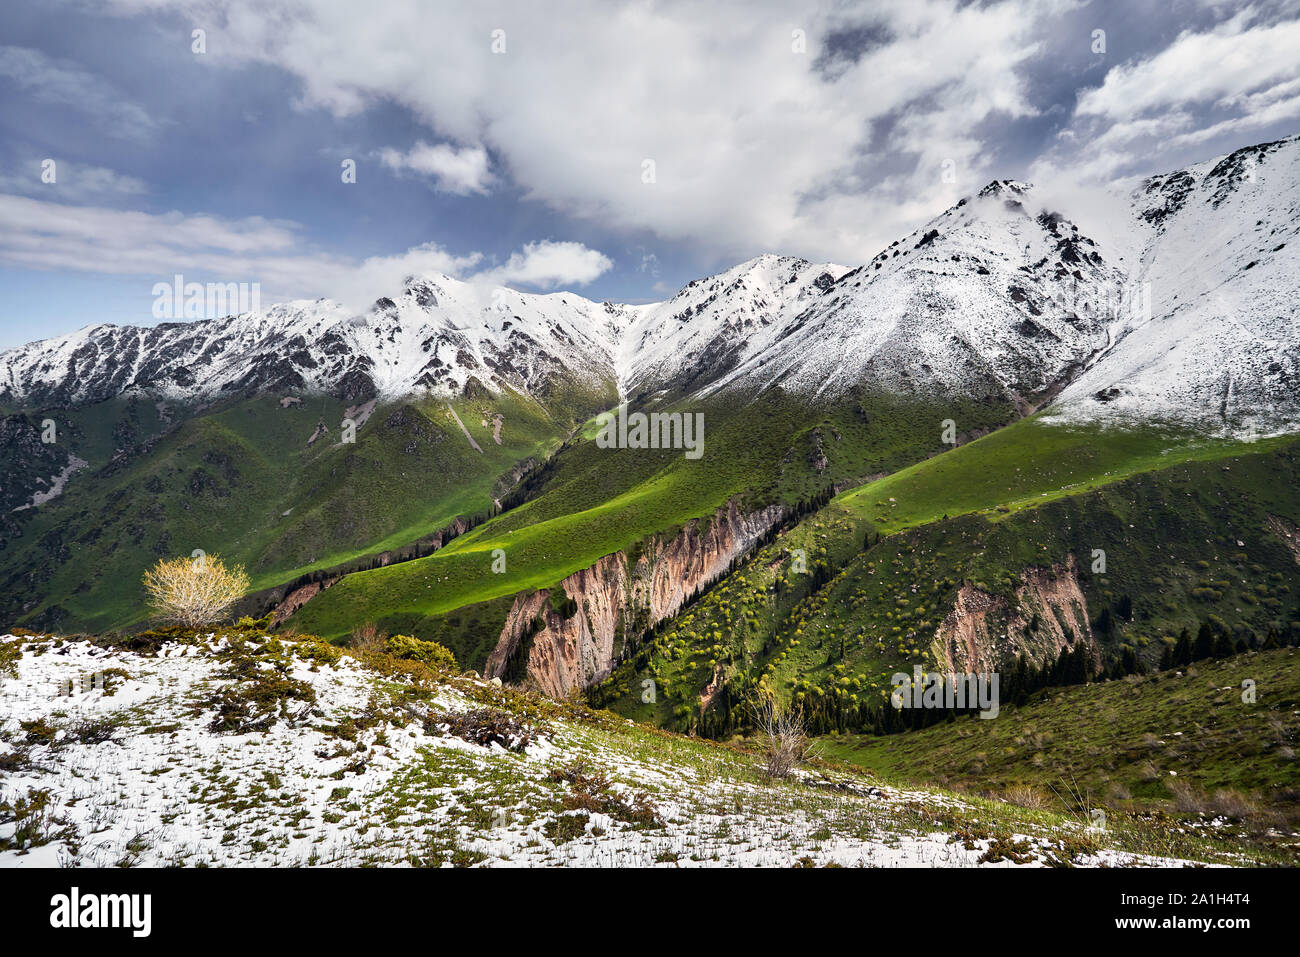 Sommet de montagne avec de la neige et de la forêt verte contre blue cloudy sky Banque D'Images